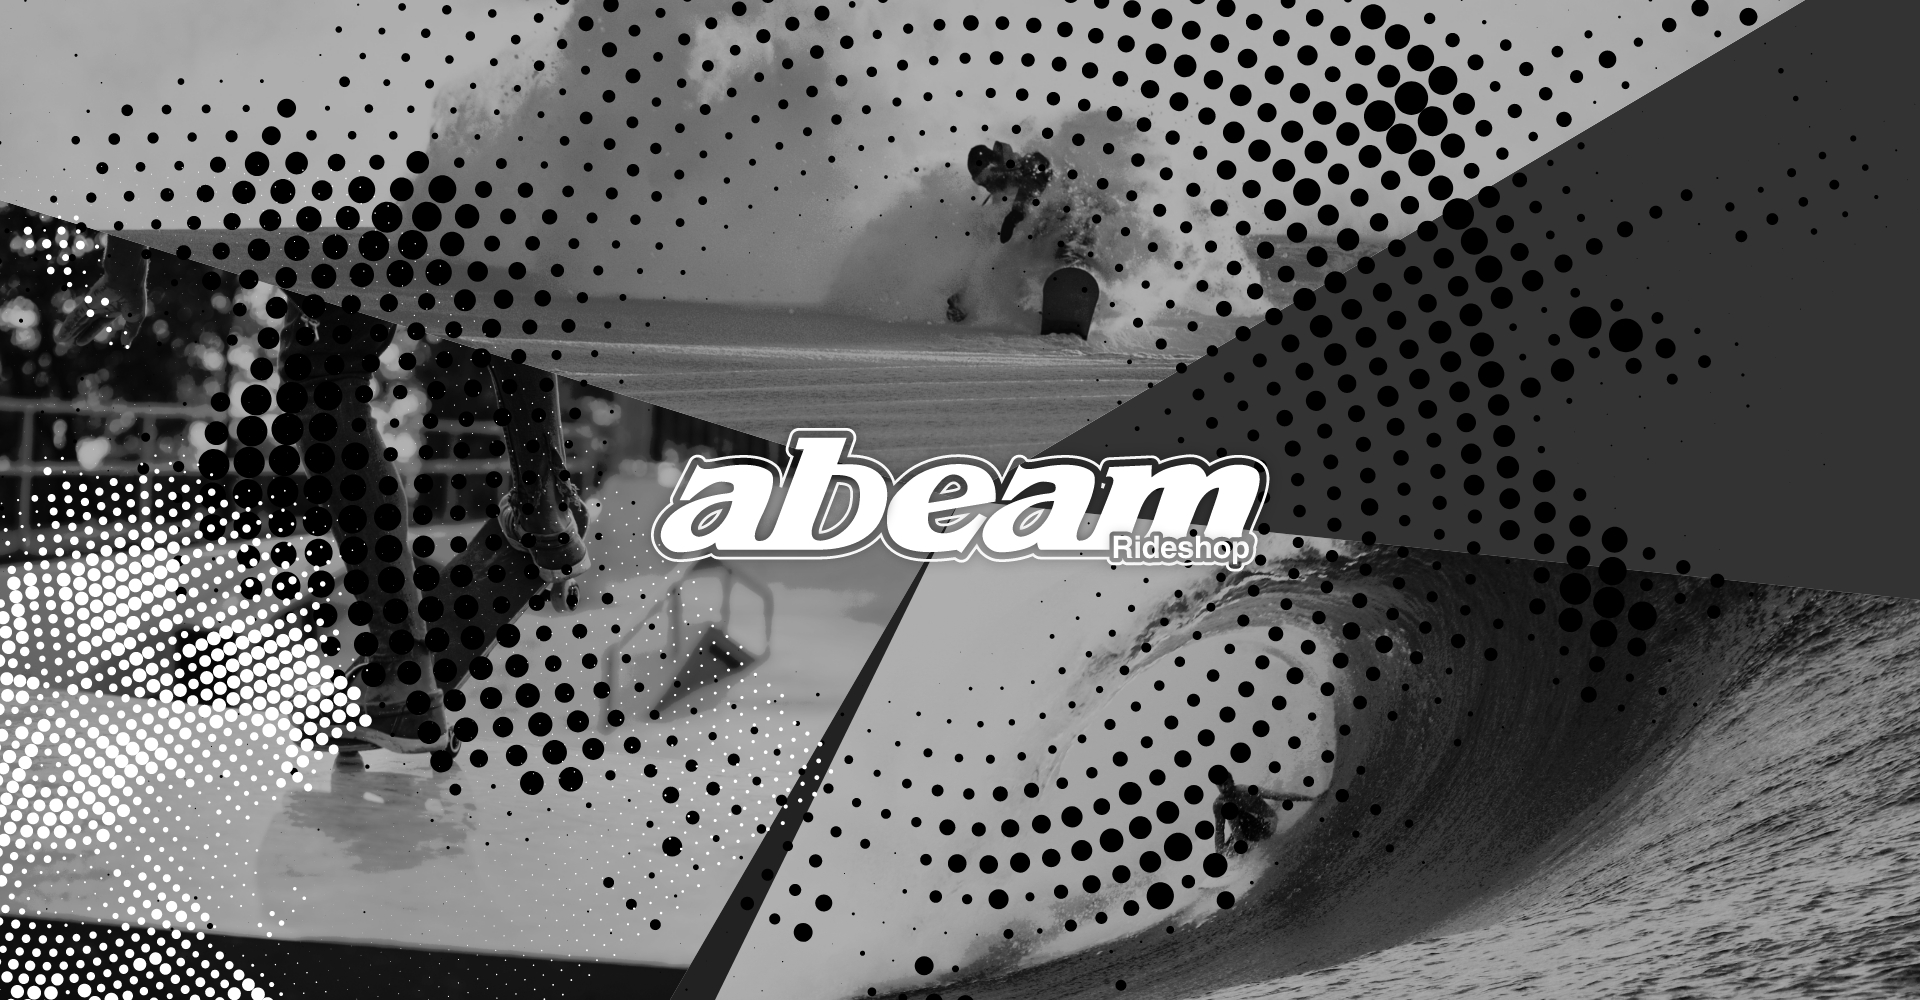 abeam（アビーム）スノーボード、サーフボード、スケートボード等に関するプロショップ